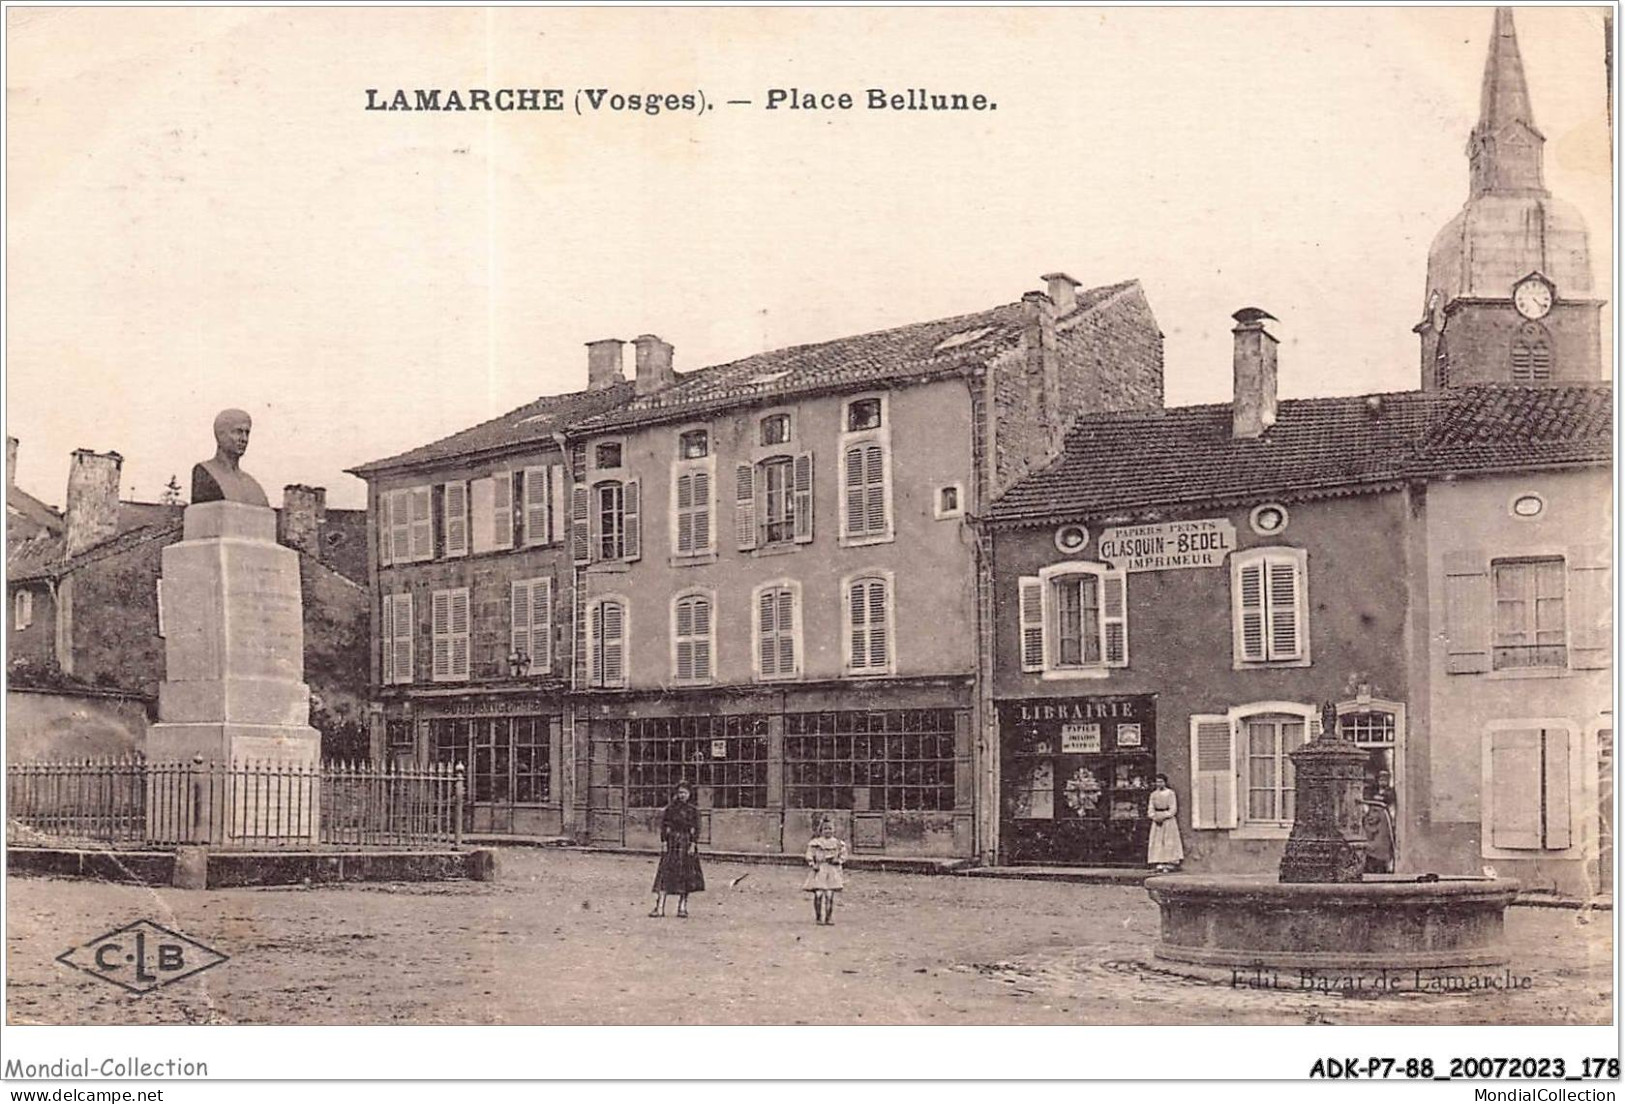 ADKP7-88-0637 - LAMARCHE - Place Bellune - Lamarche